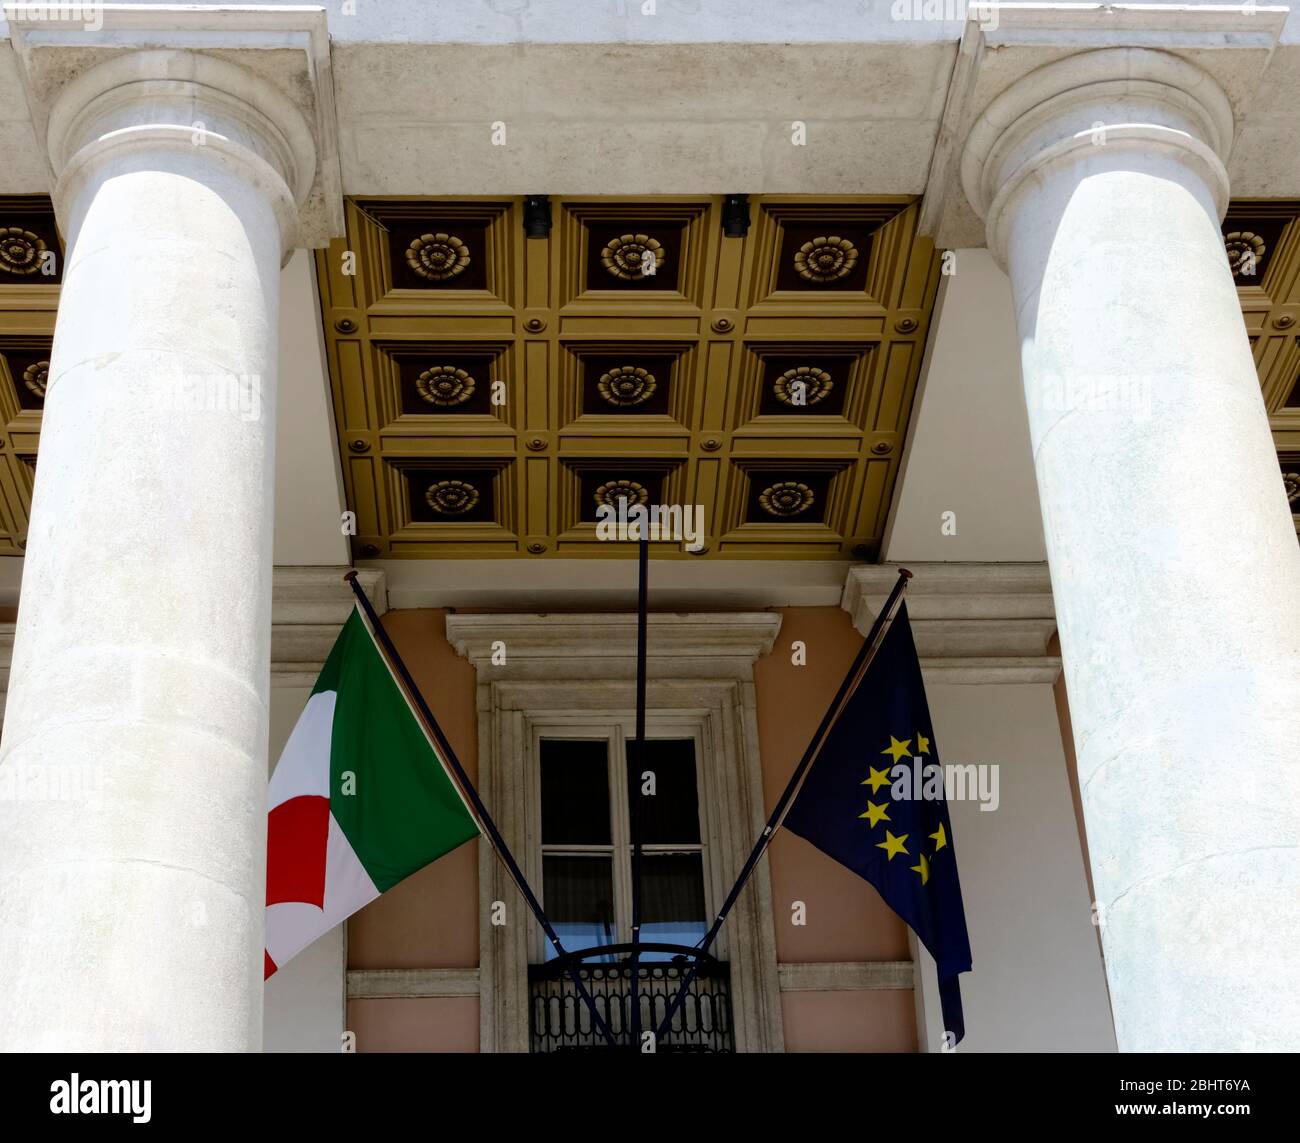 Italienische und europäische Flaggen winken. Sitz der Industrie-, Gewerbe- und Landwirtschaftskammer Venezia Giulia. Neoklassizistisches Gebäude Triest, Italien Stockfoto